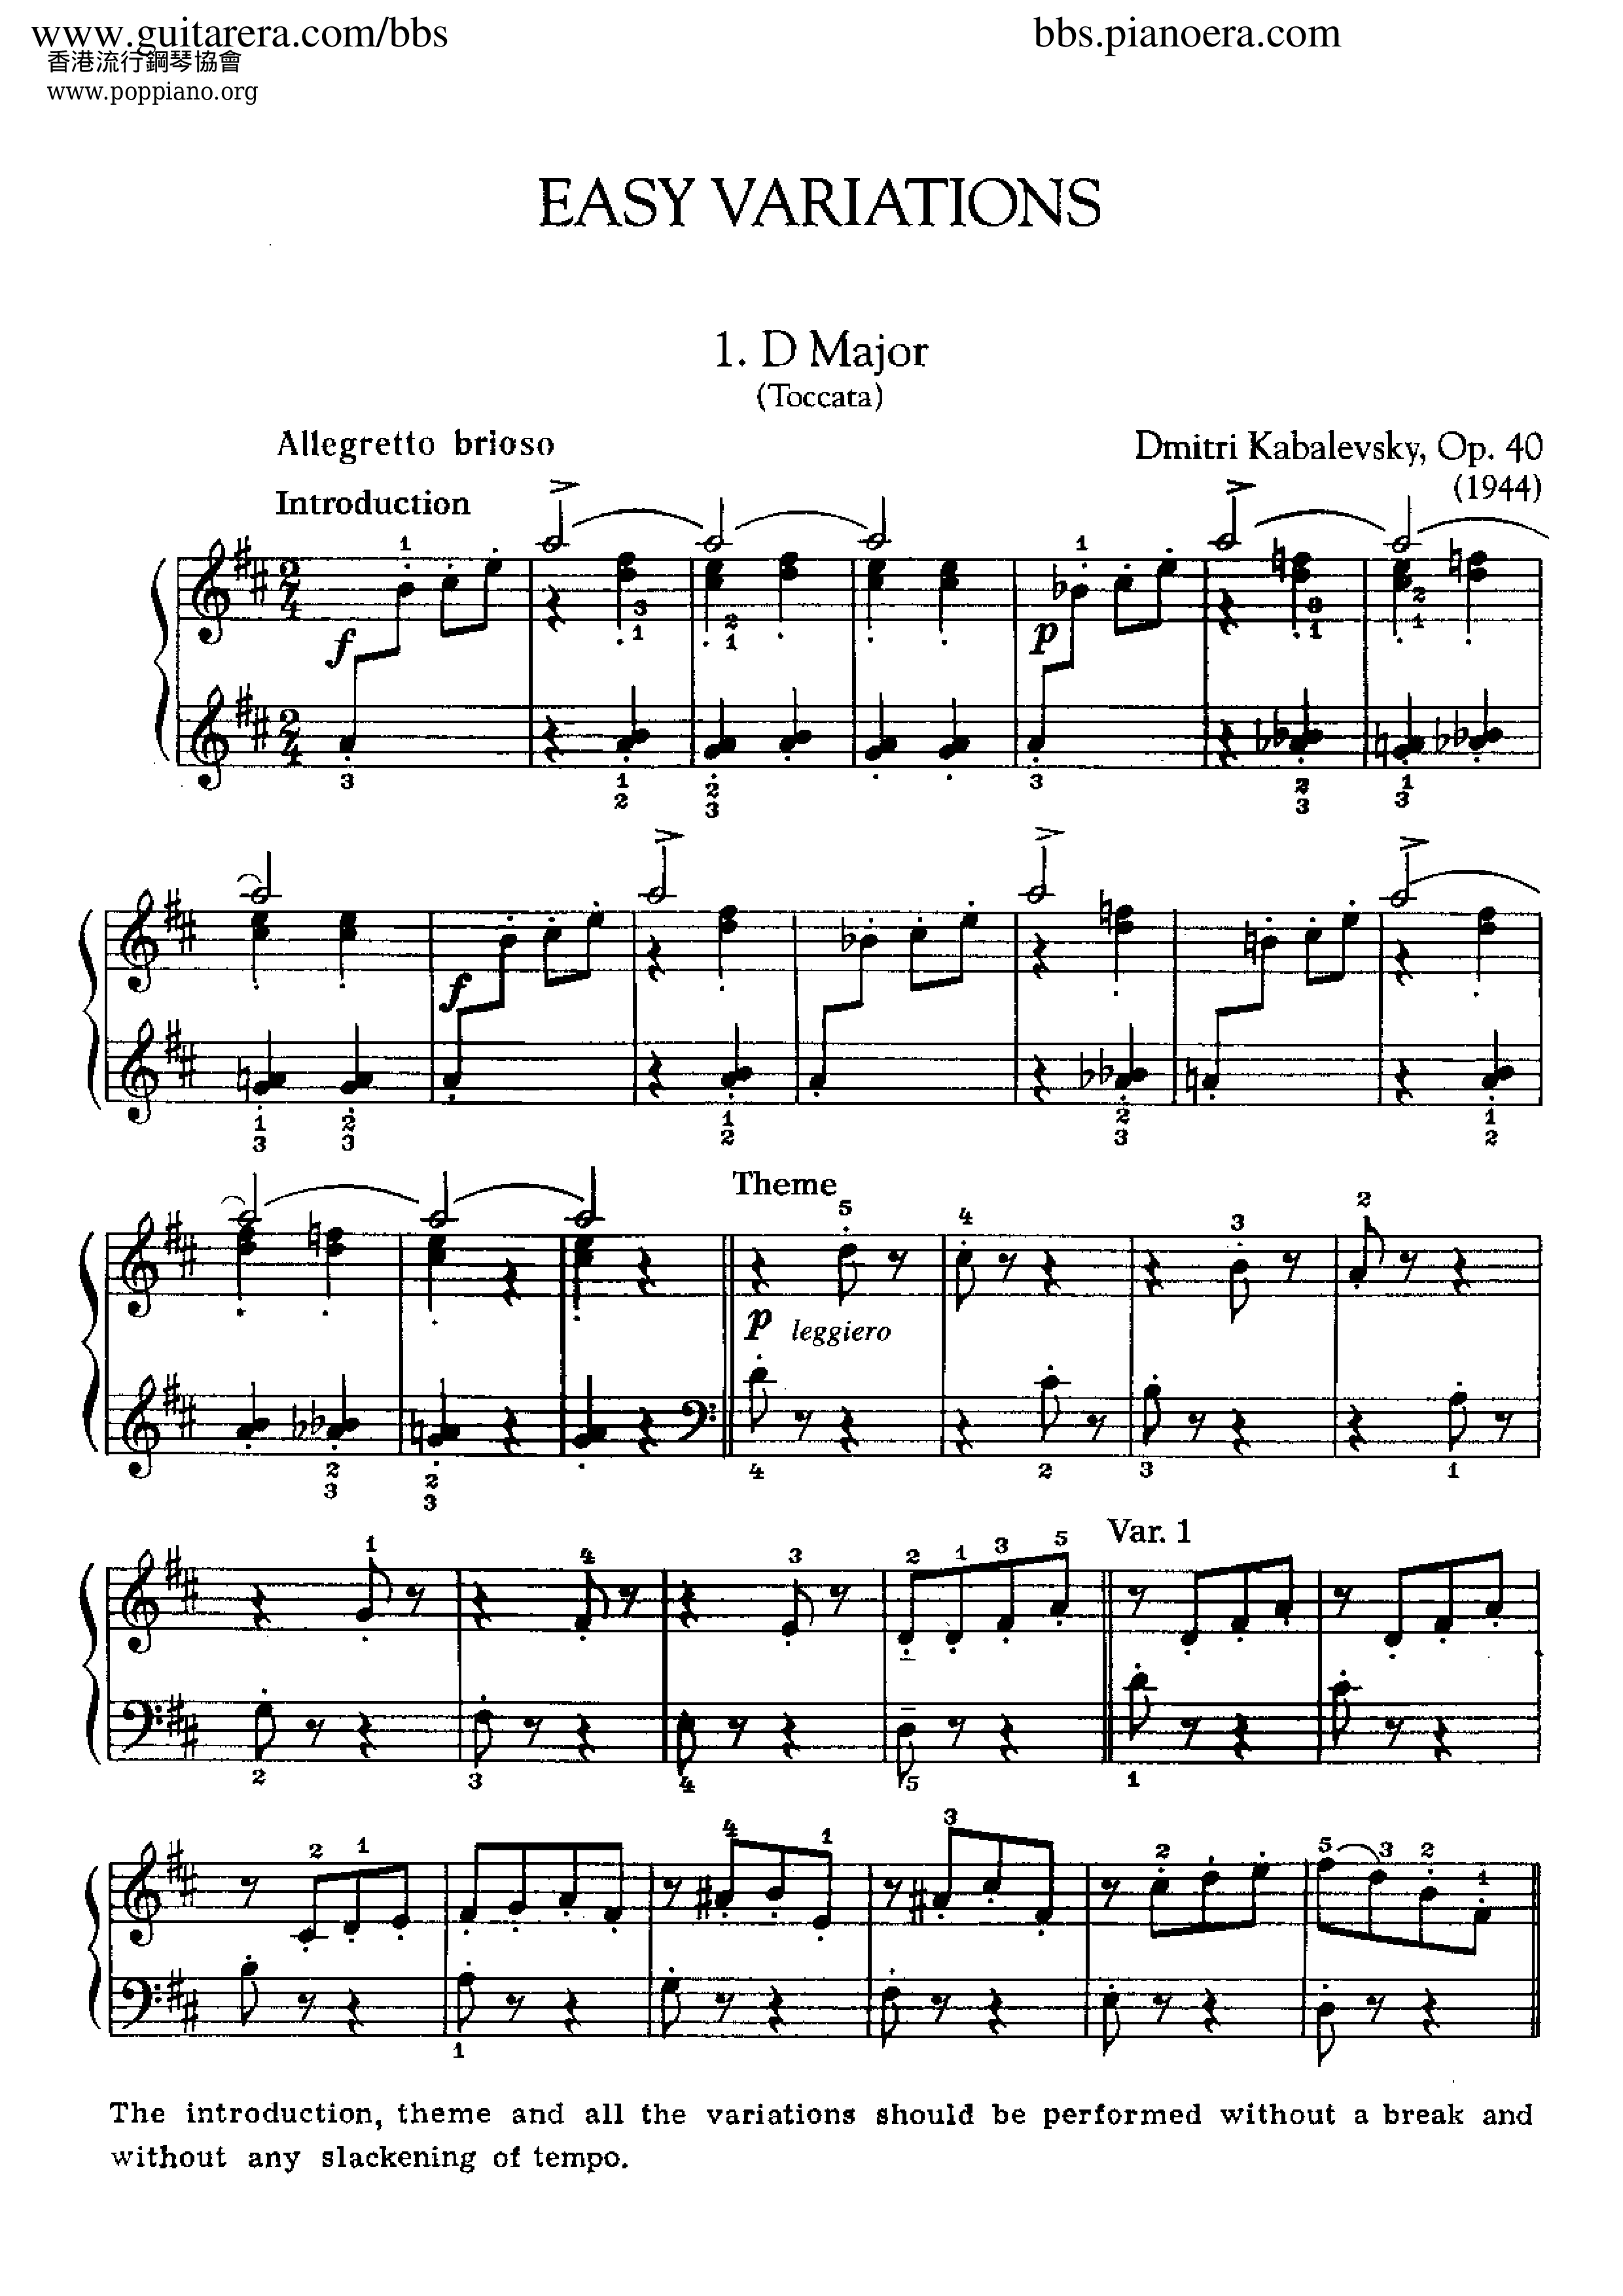 Easy Variations op. 40 in D Major琴譜